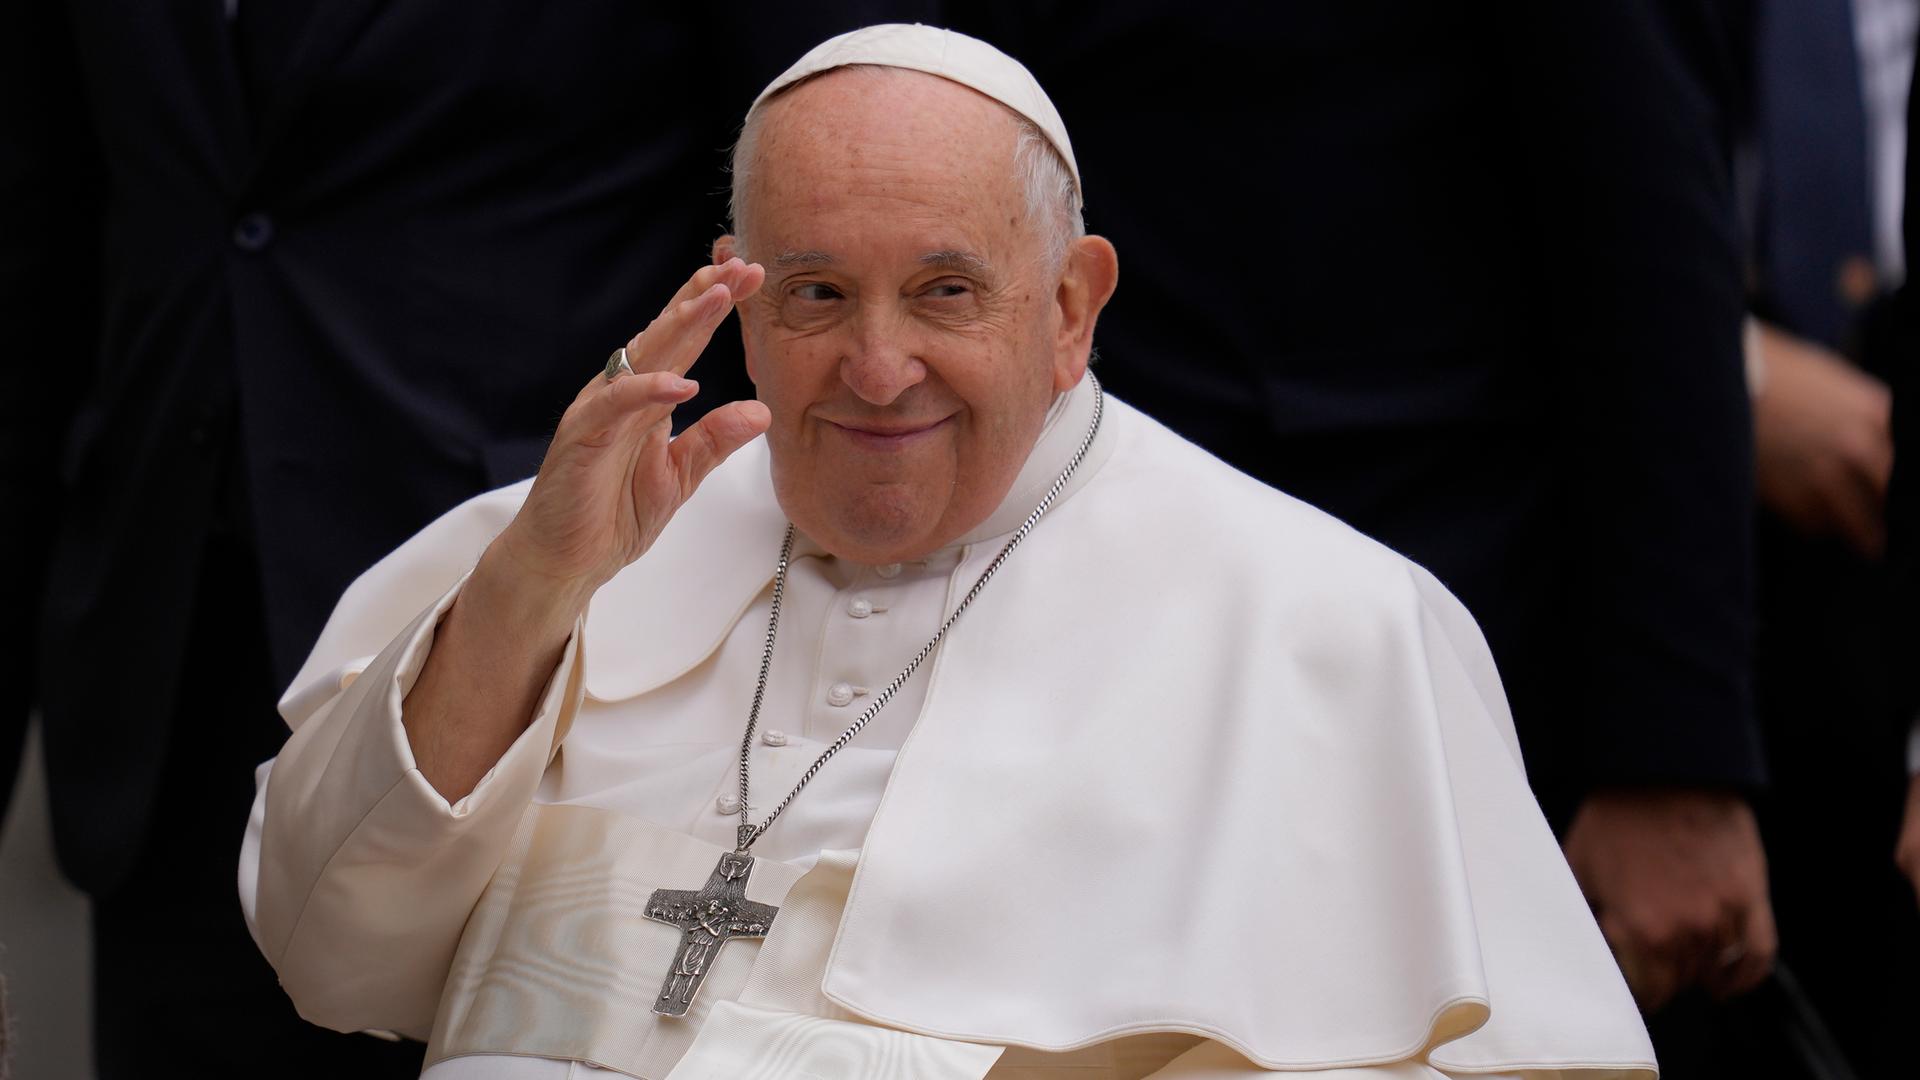 Der Papst sitzt im Rollstuhl und winkt. Er trägt ein weißes Gewand und ein großes Kreuz um den Hals.